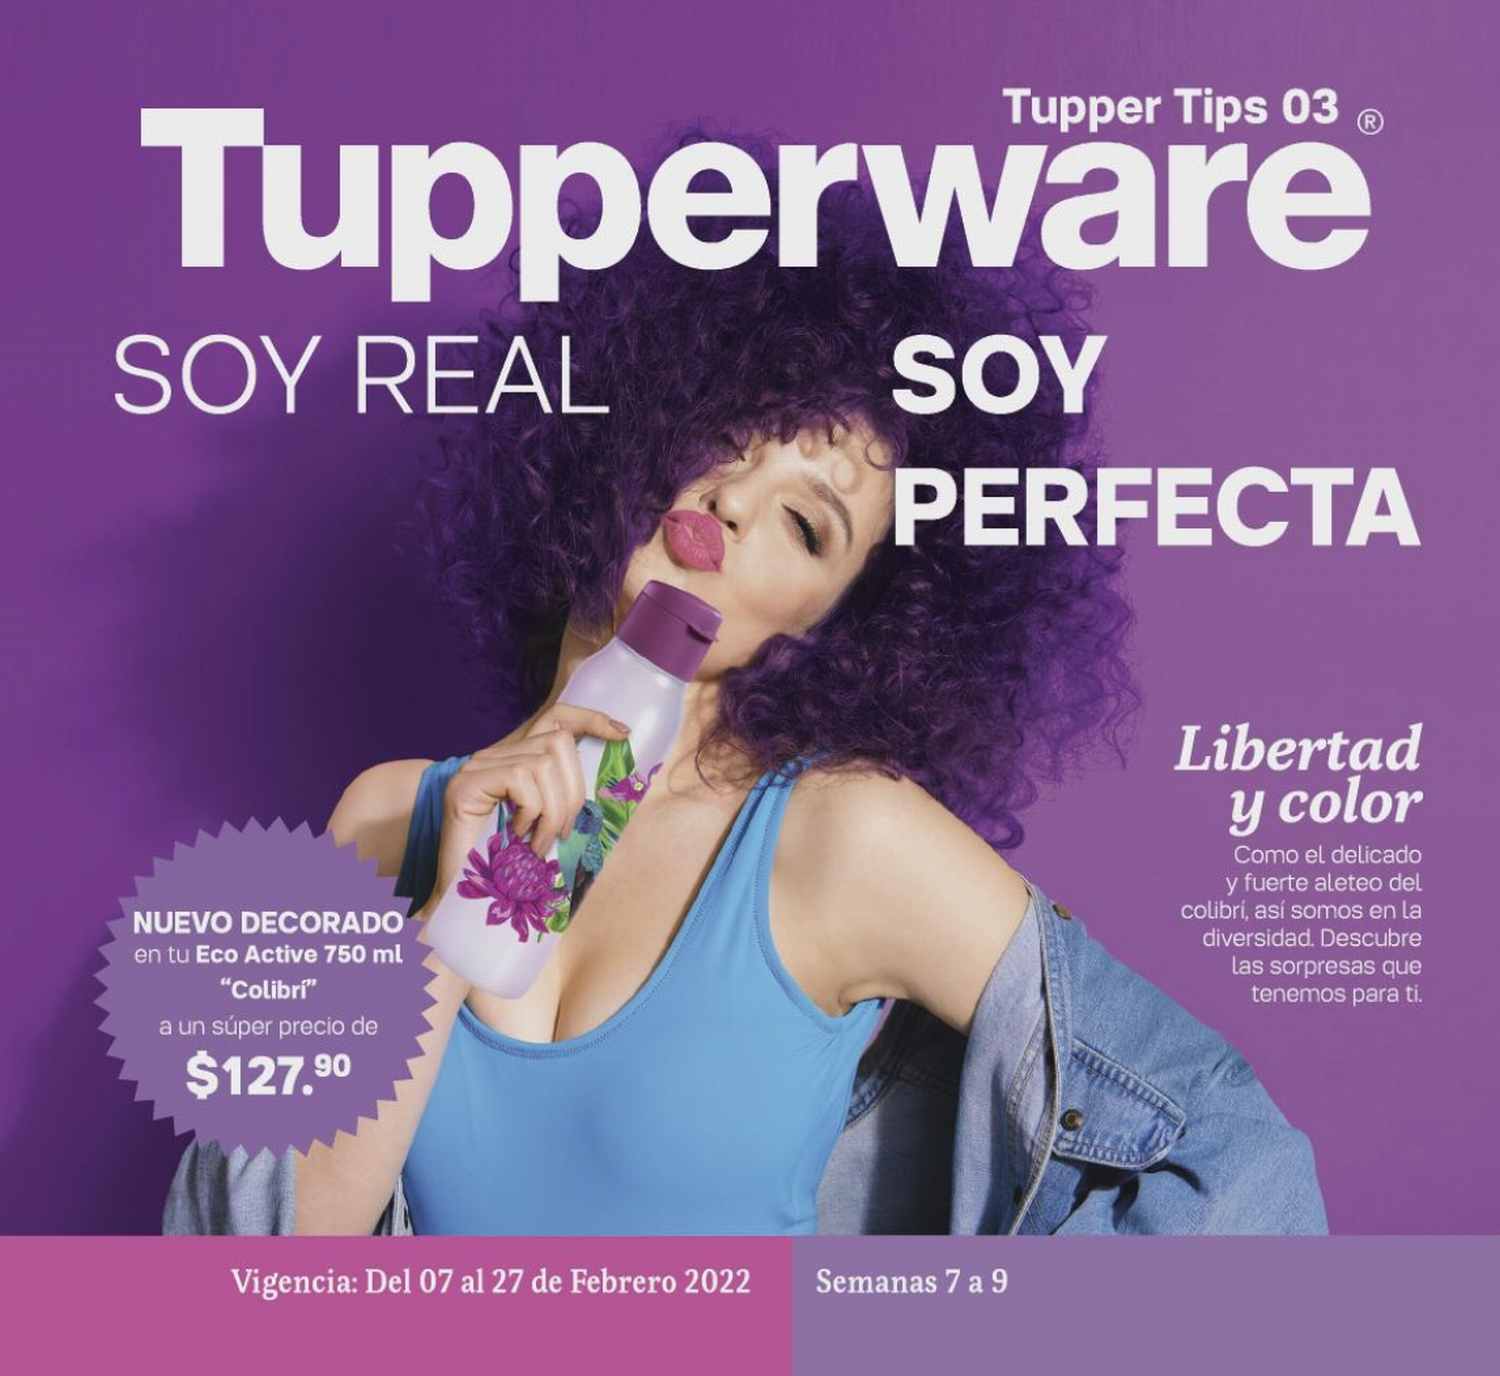 Catálogo Tupperware Tupper Tips 3 2022 México